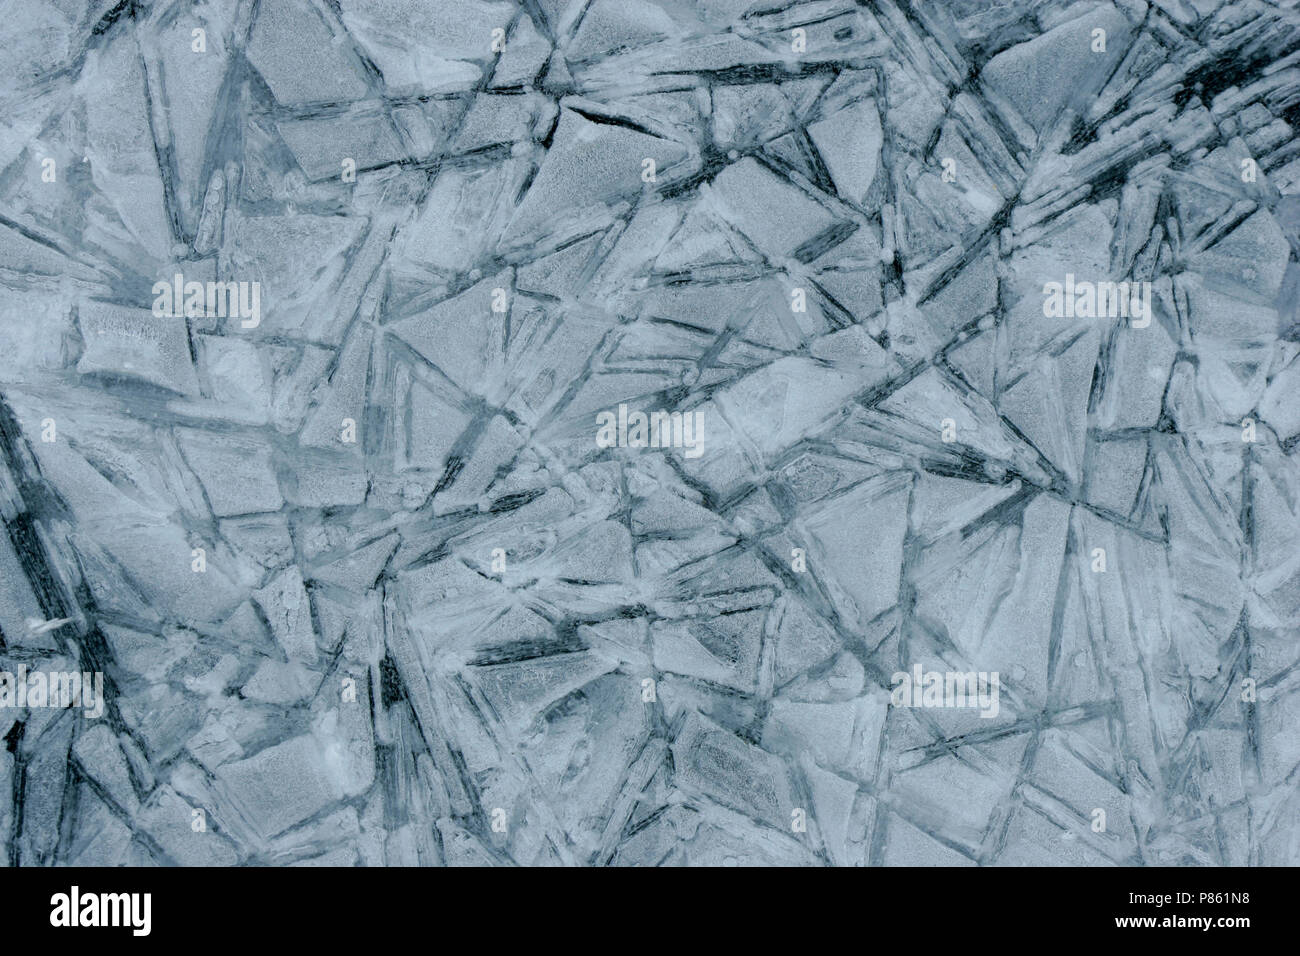 IJskristallen, cristaux de glace Banque D'Images